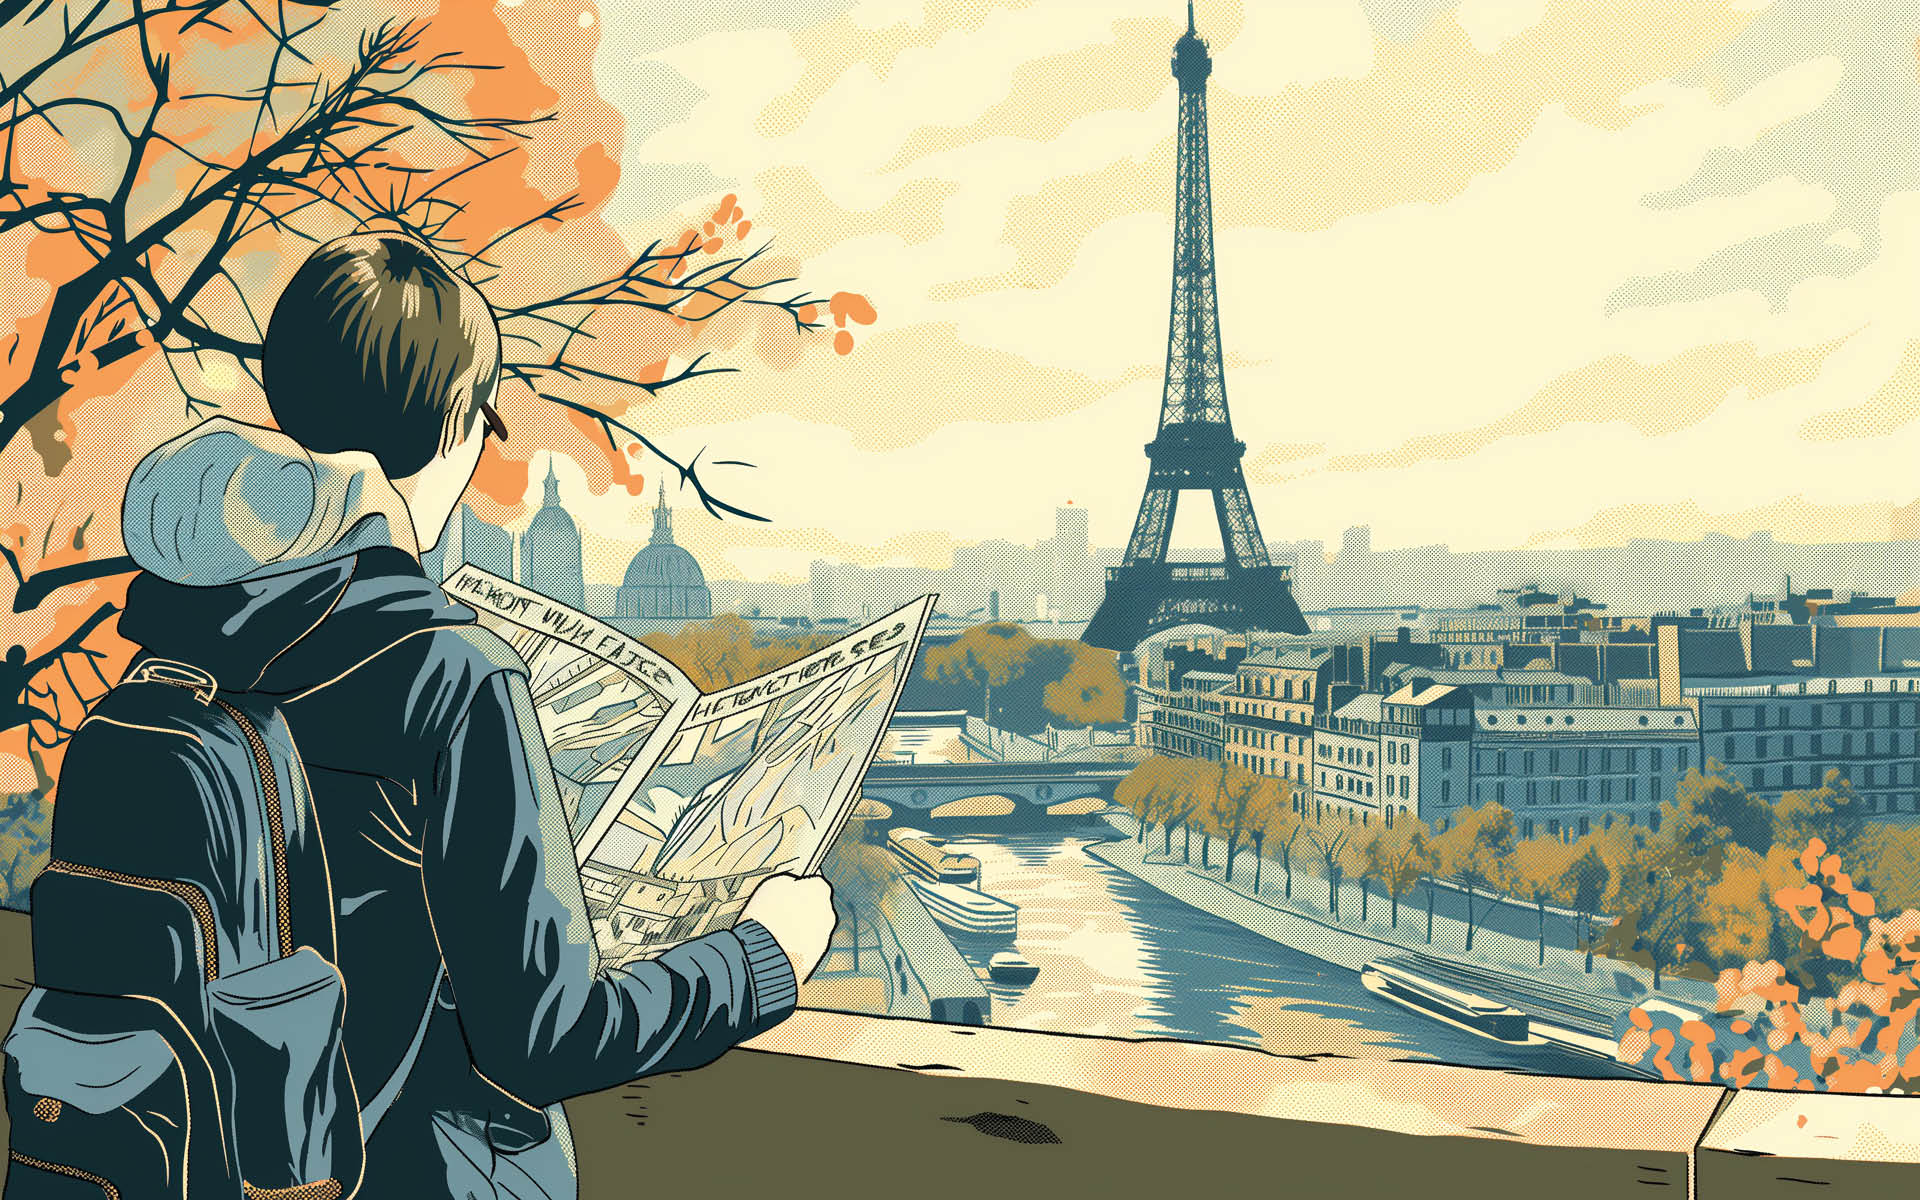 Um viajante olhando um mapa à frente enquanto a torre eiffel e um quarteirão francês se estende ao fundo - imagem gerada por inteligência artificial (MidJourney)